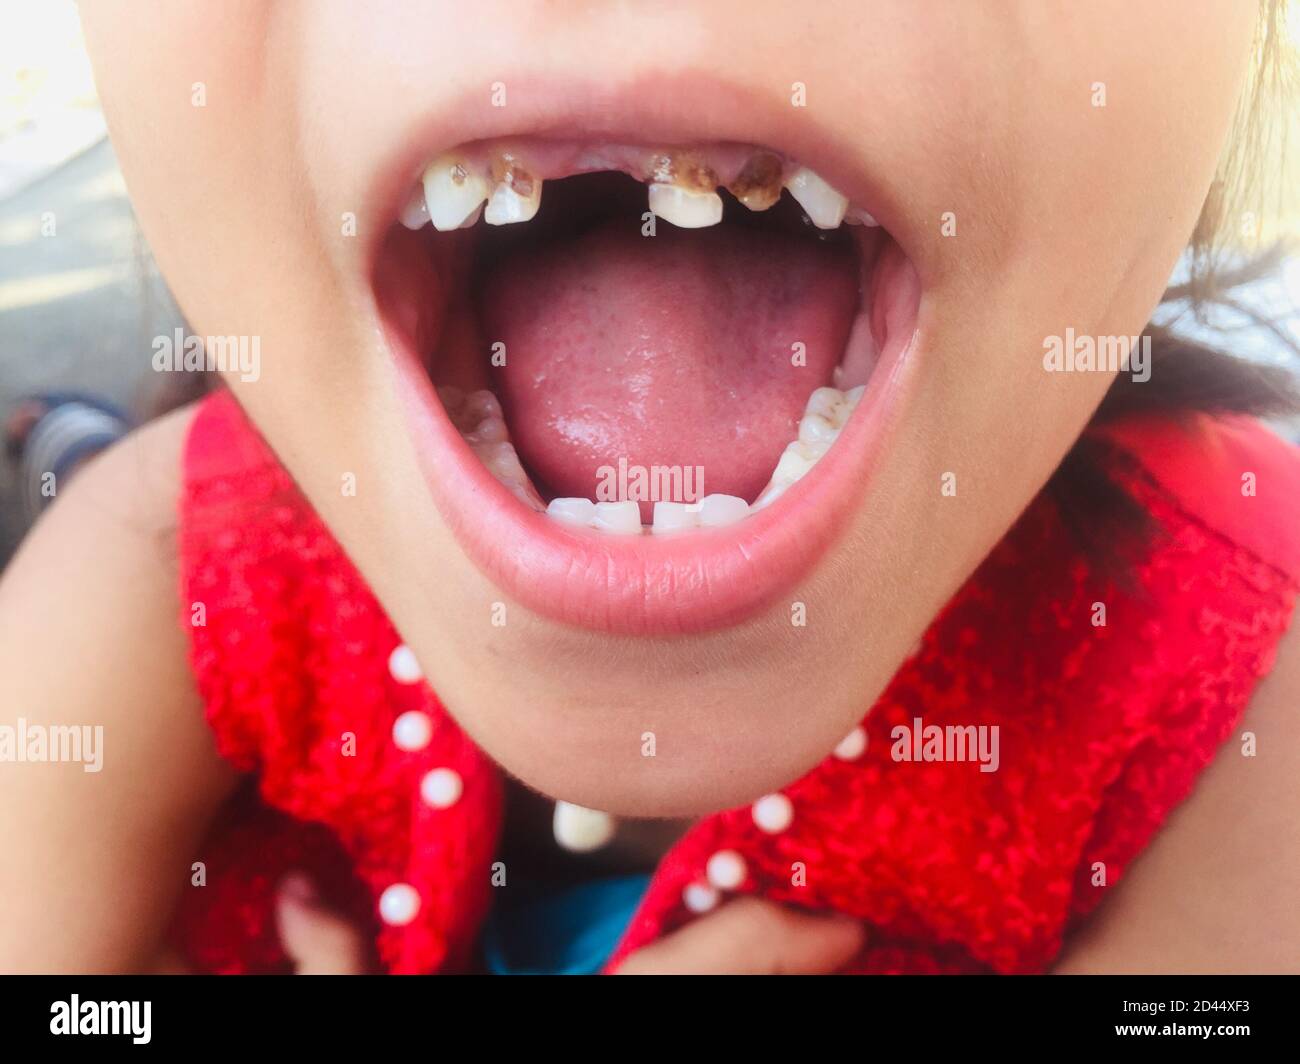 Ein Mädchen mit offenem Mund zeigt ihre Zähne für die Überprüfung ihrer Kavität Infektion und Zahnschmerzen.verfallener Zahn, Zahnproblem und Zahnkrankheit. Stockfoto